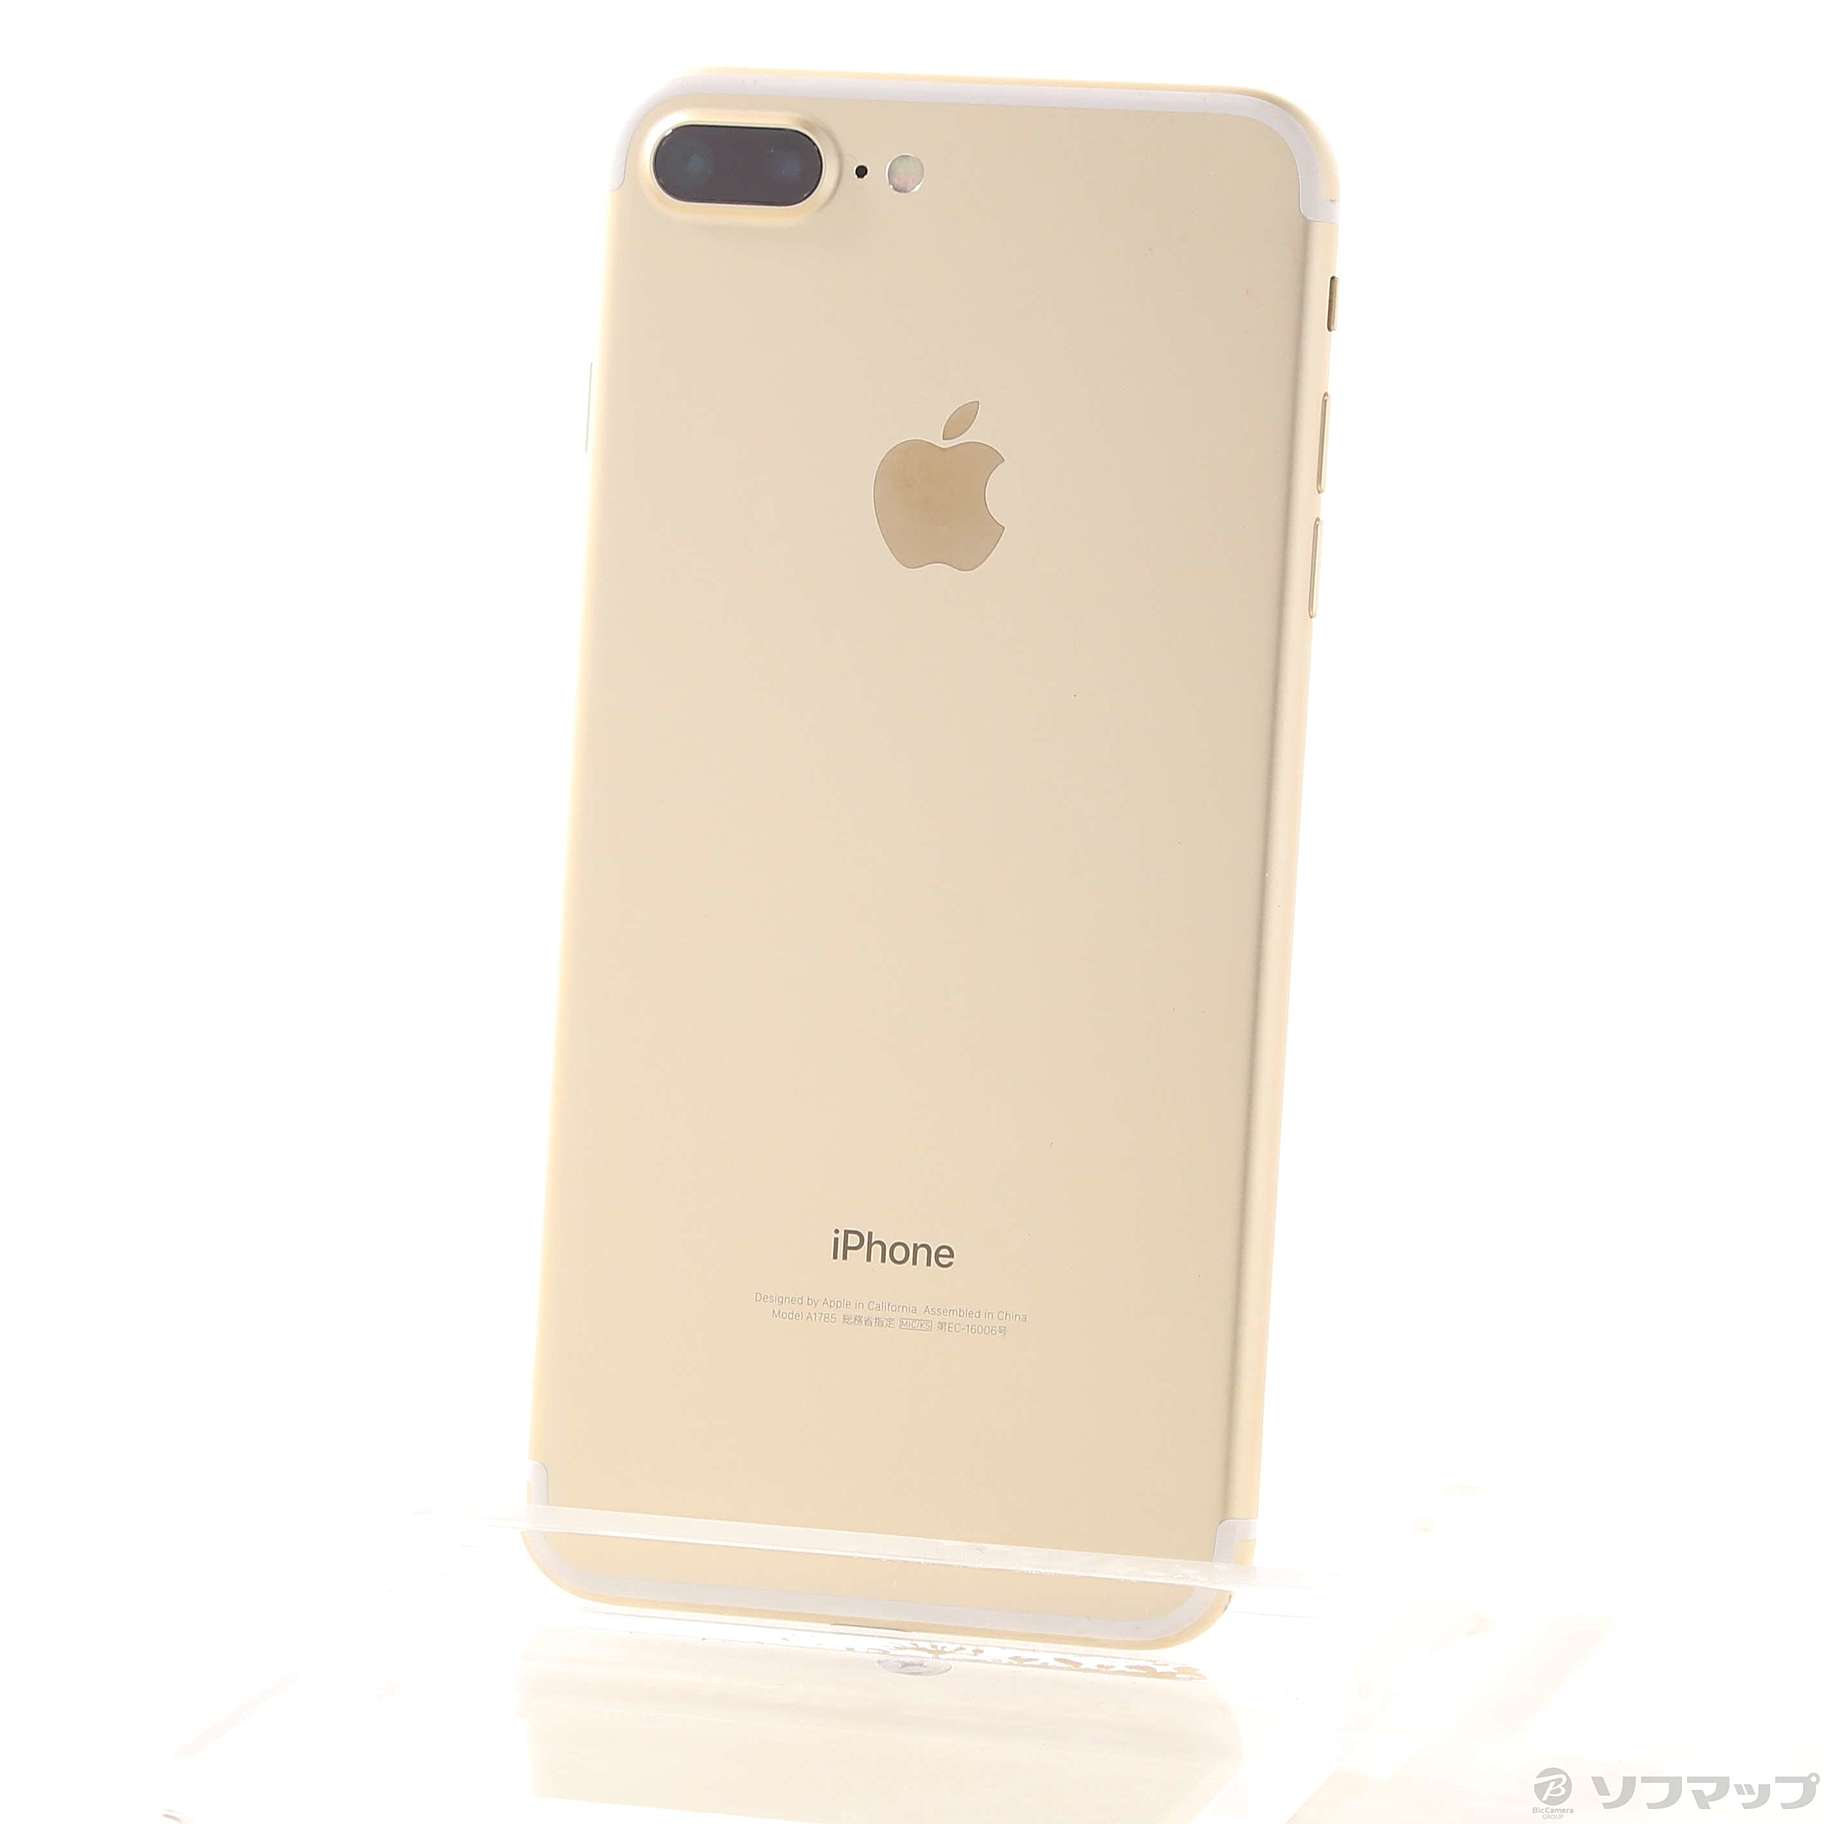 SIMフリーDE残責制限無】iPhone 7 Plus 32GB GOLD - スマートフォン本体